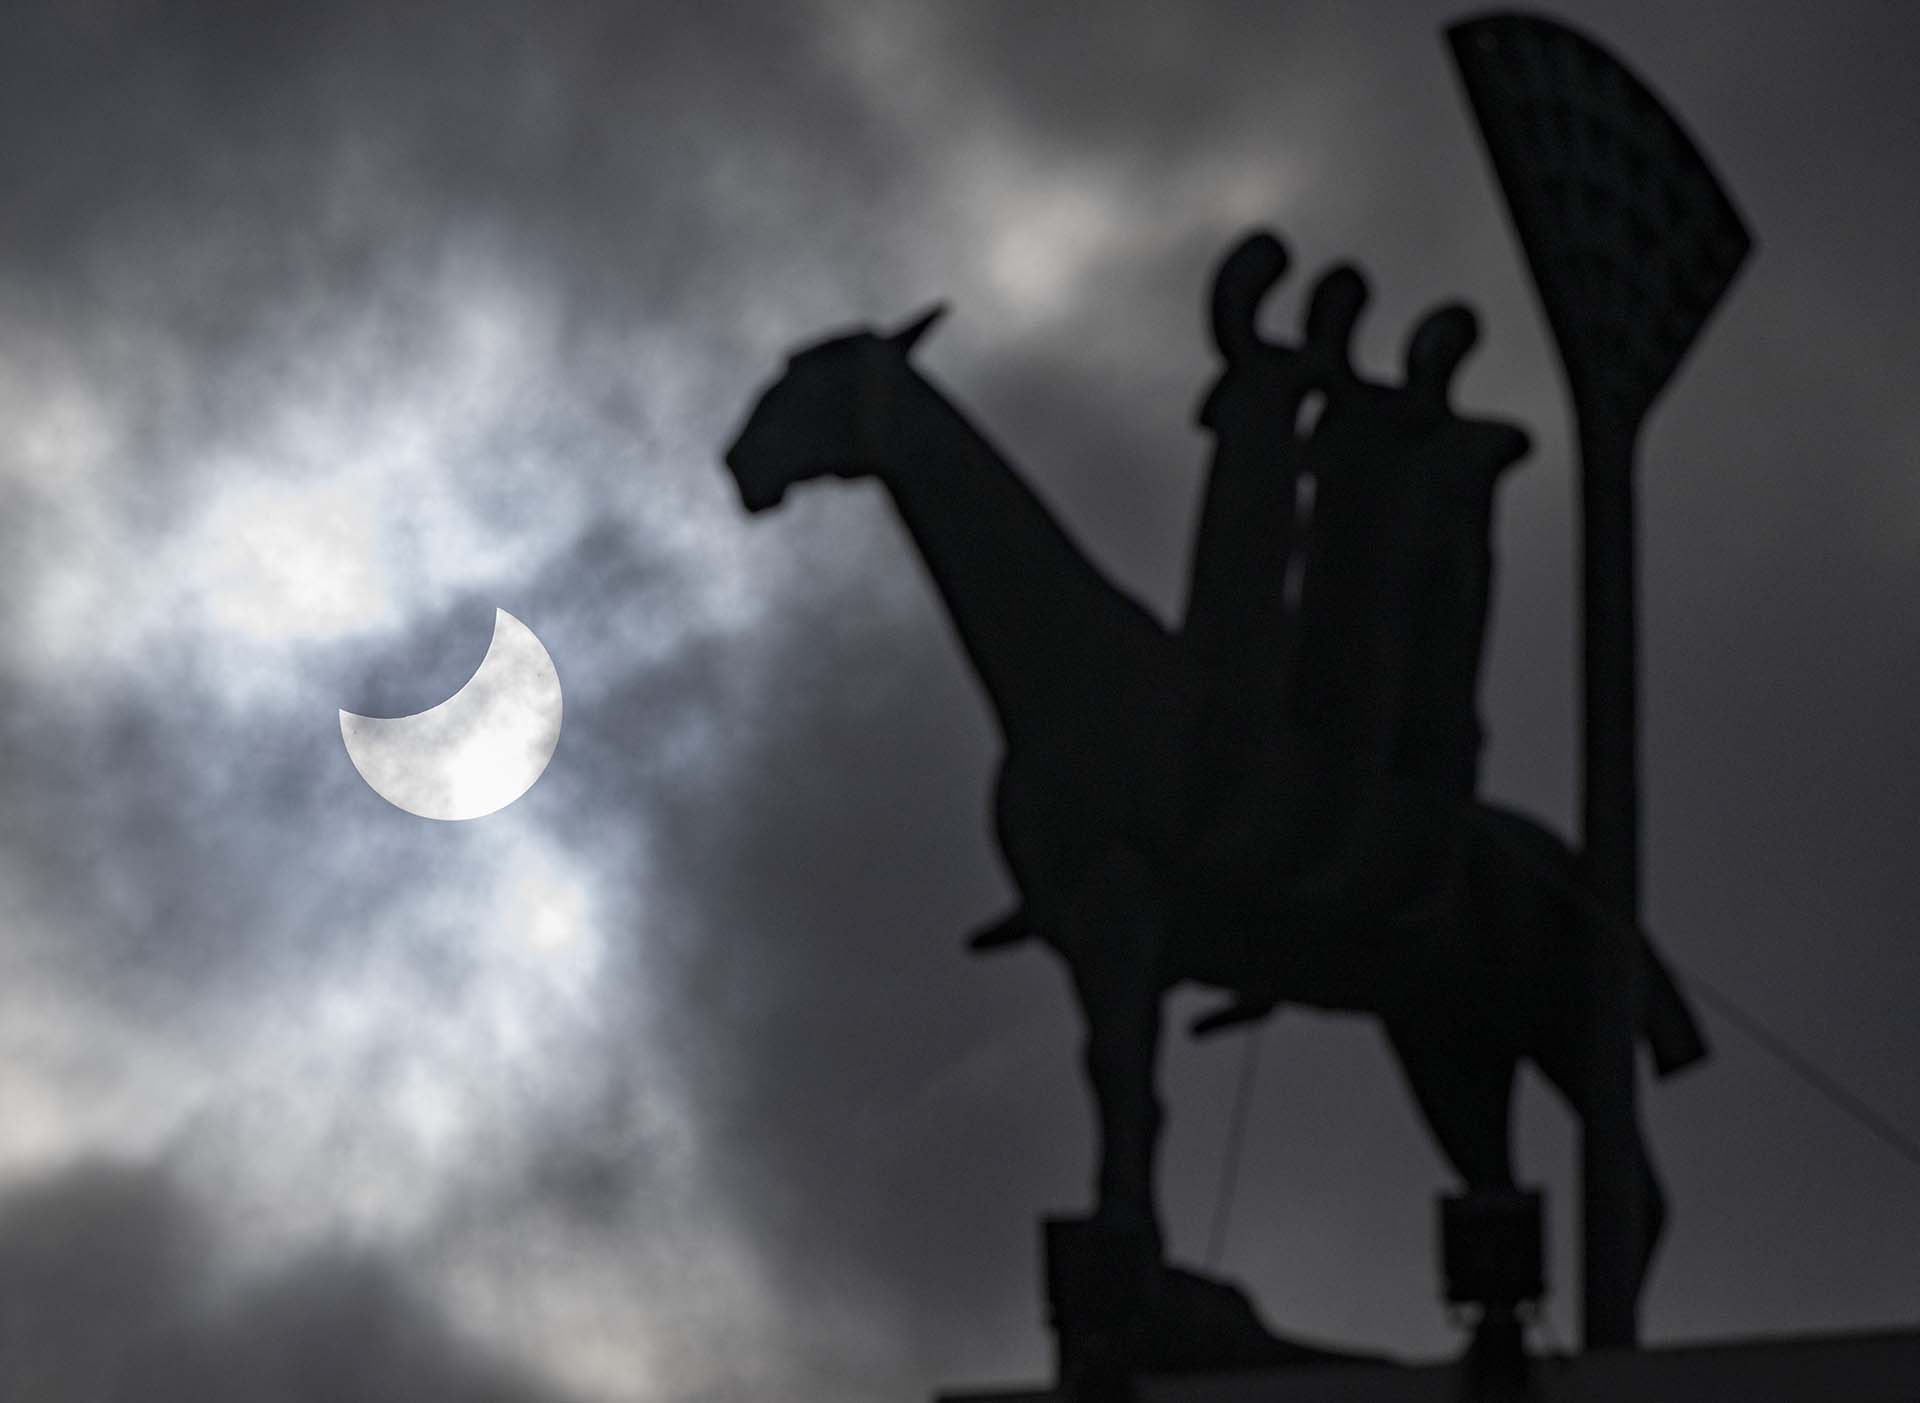 Un eclipse solar parcial (L) y la estatua "Jinete del Apocalipsis" del artista danés Bjorn Norgaard en el centro de Malmo, Suecia (Photo by Johan NILSSON / TT News Agency / AFP)